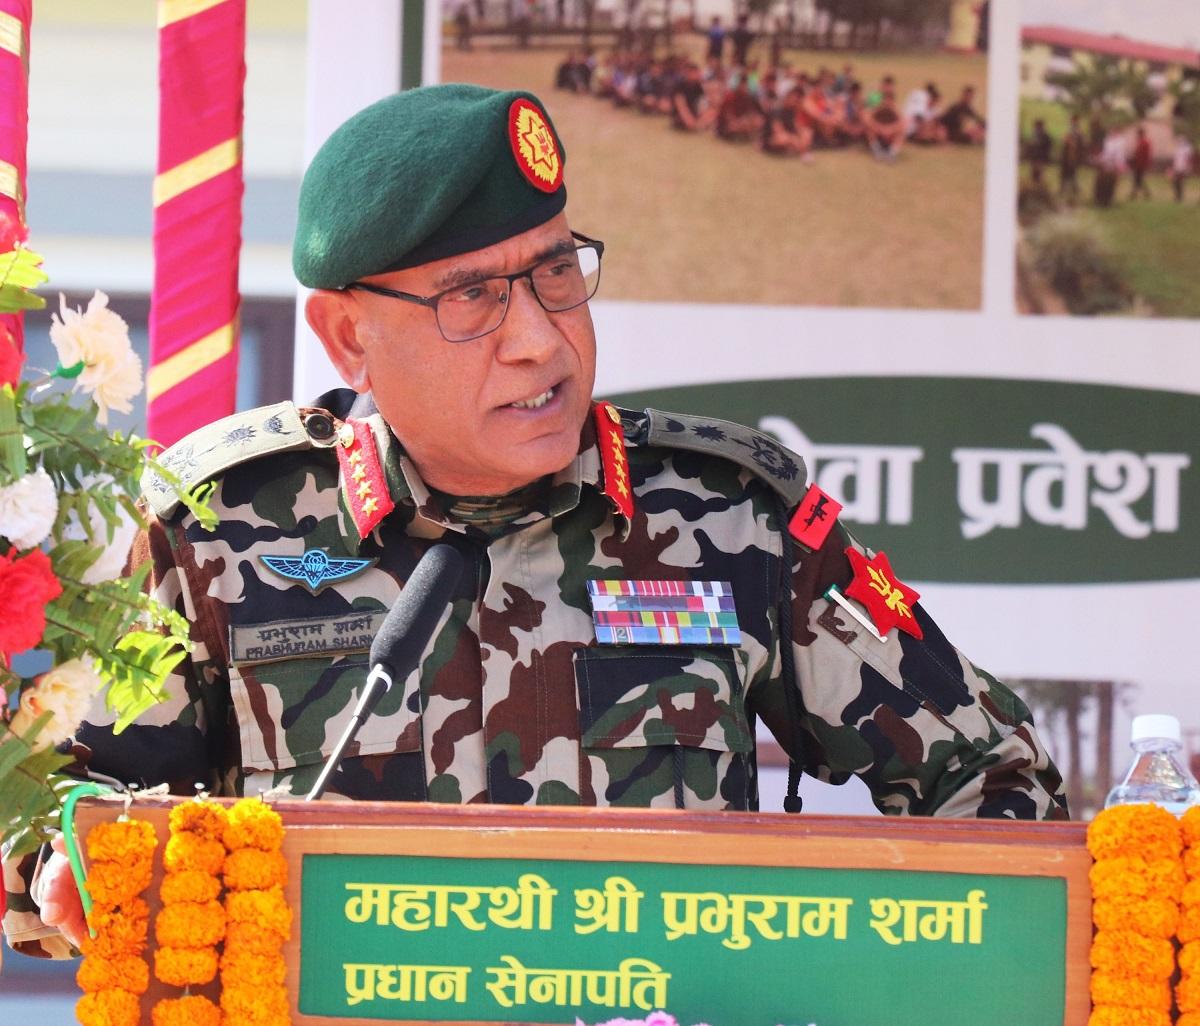 नेपाली सेनाको सङ्ख्या नेपाल सरकारले निर्धारण गर्ने हो : प्रधानसेनापति शर्मा